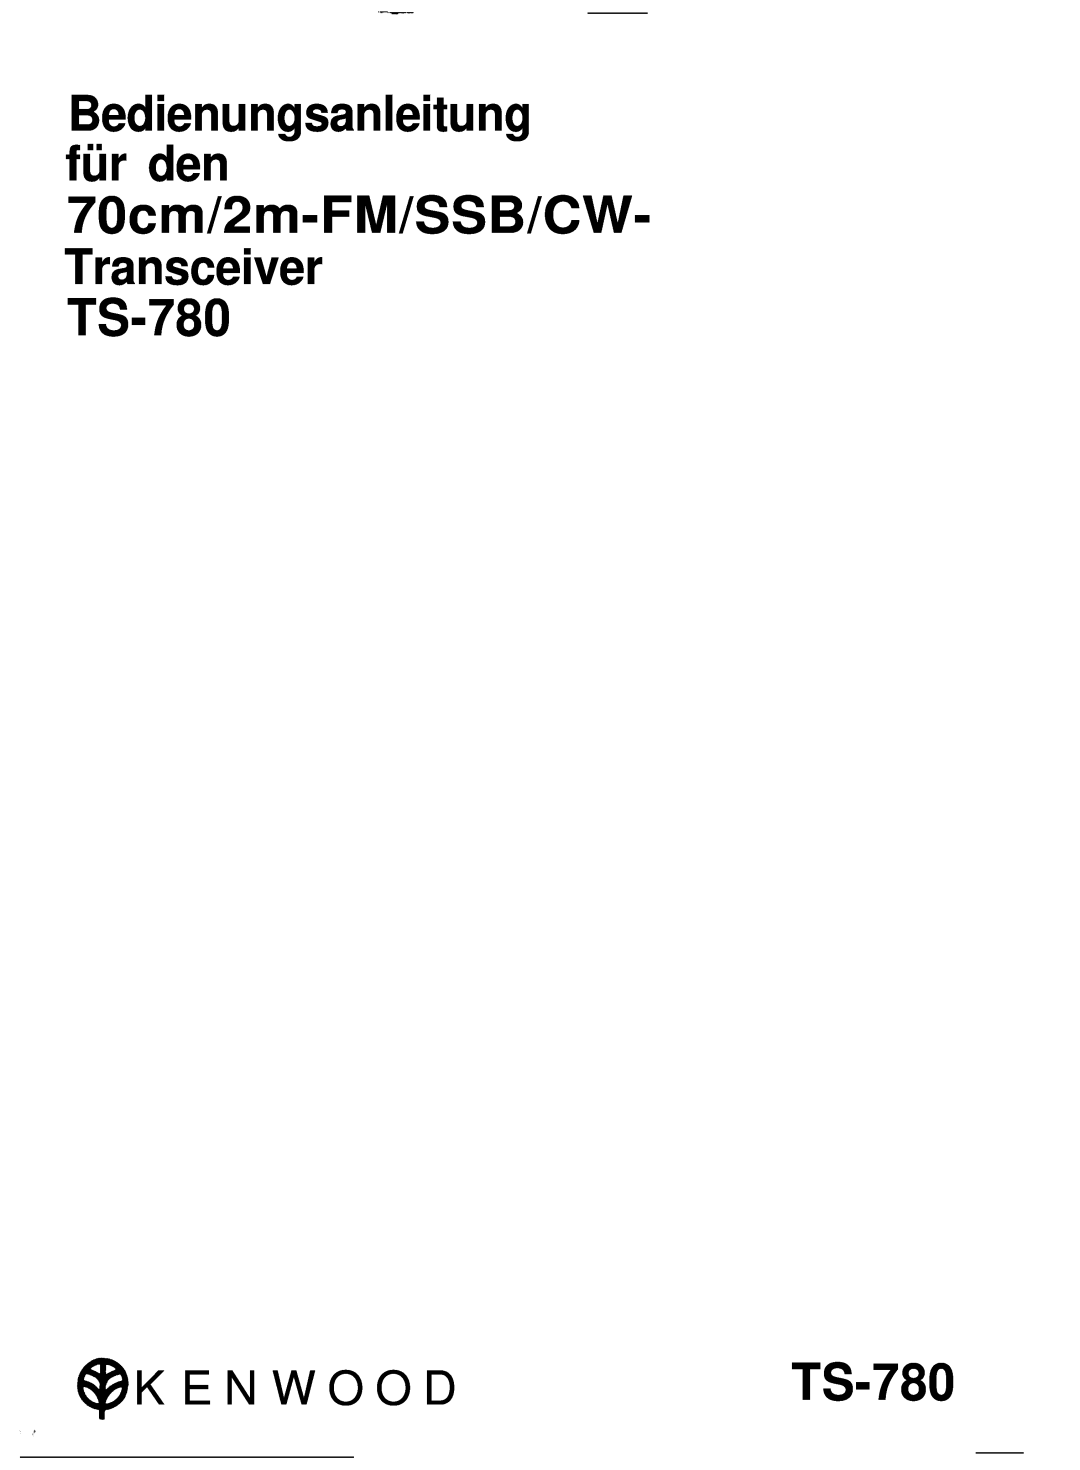 Kenwood TS-780 manual K E N W O O D, 70cm/2m-FM/SSB/CW, Bedienungsanleitung für den 